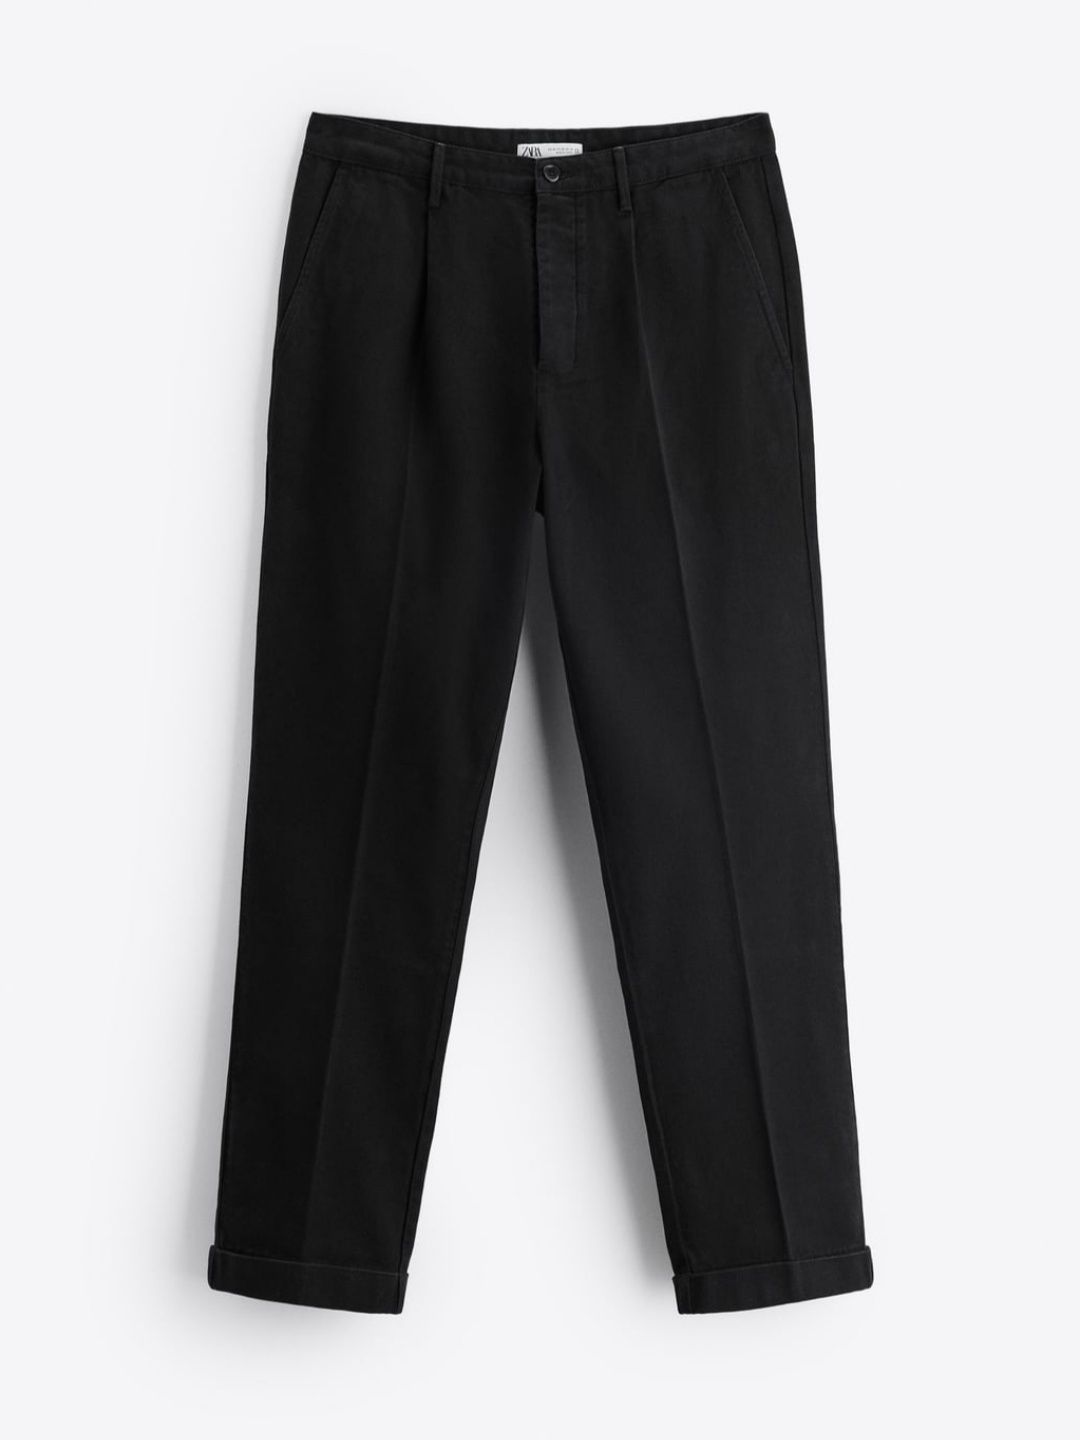 Spodnie męskie z zaszewkami i mankietami przy nogawce | Zara | EUR42